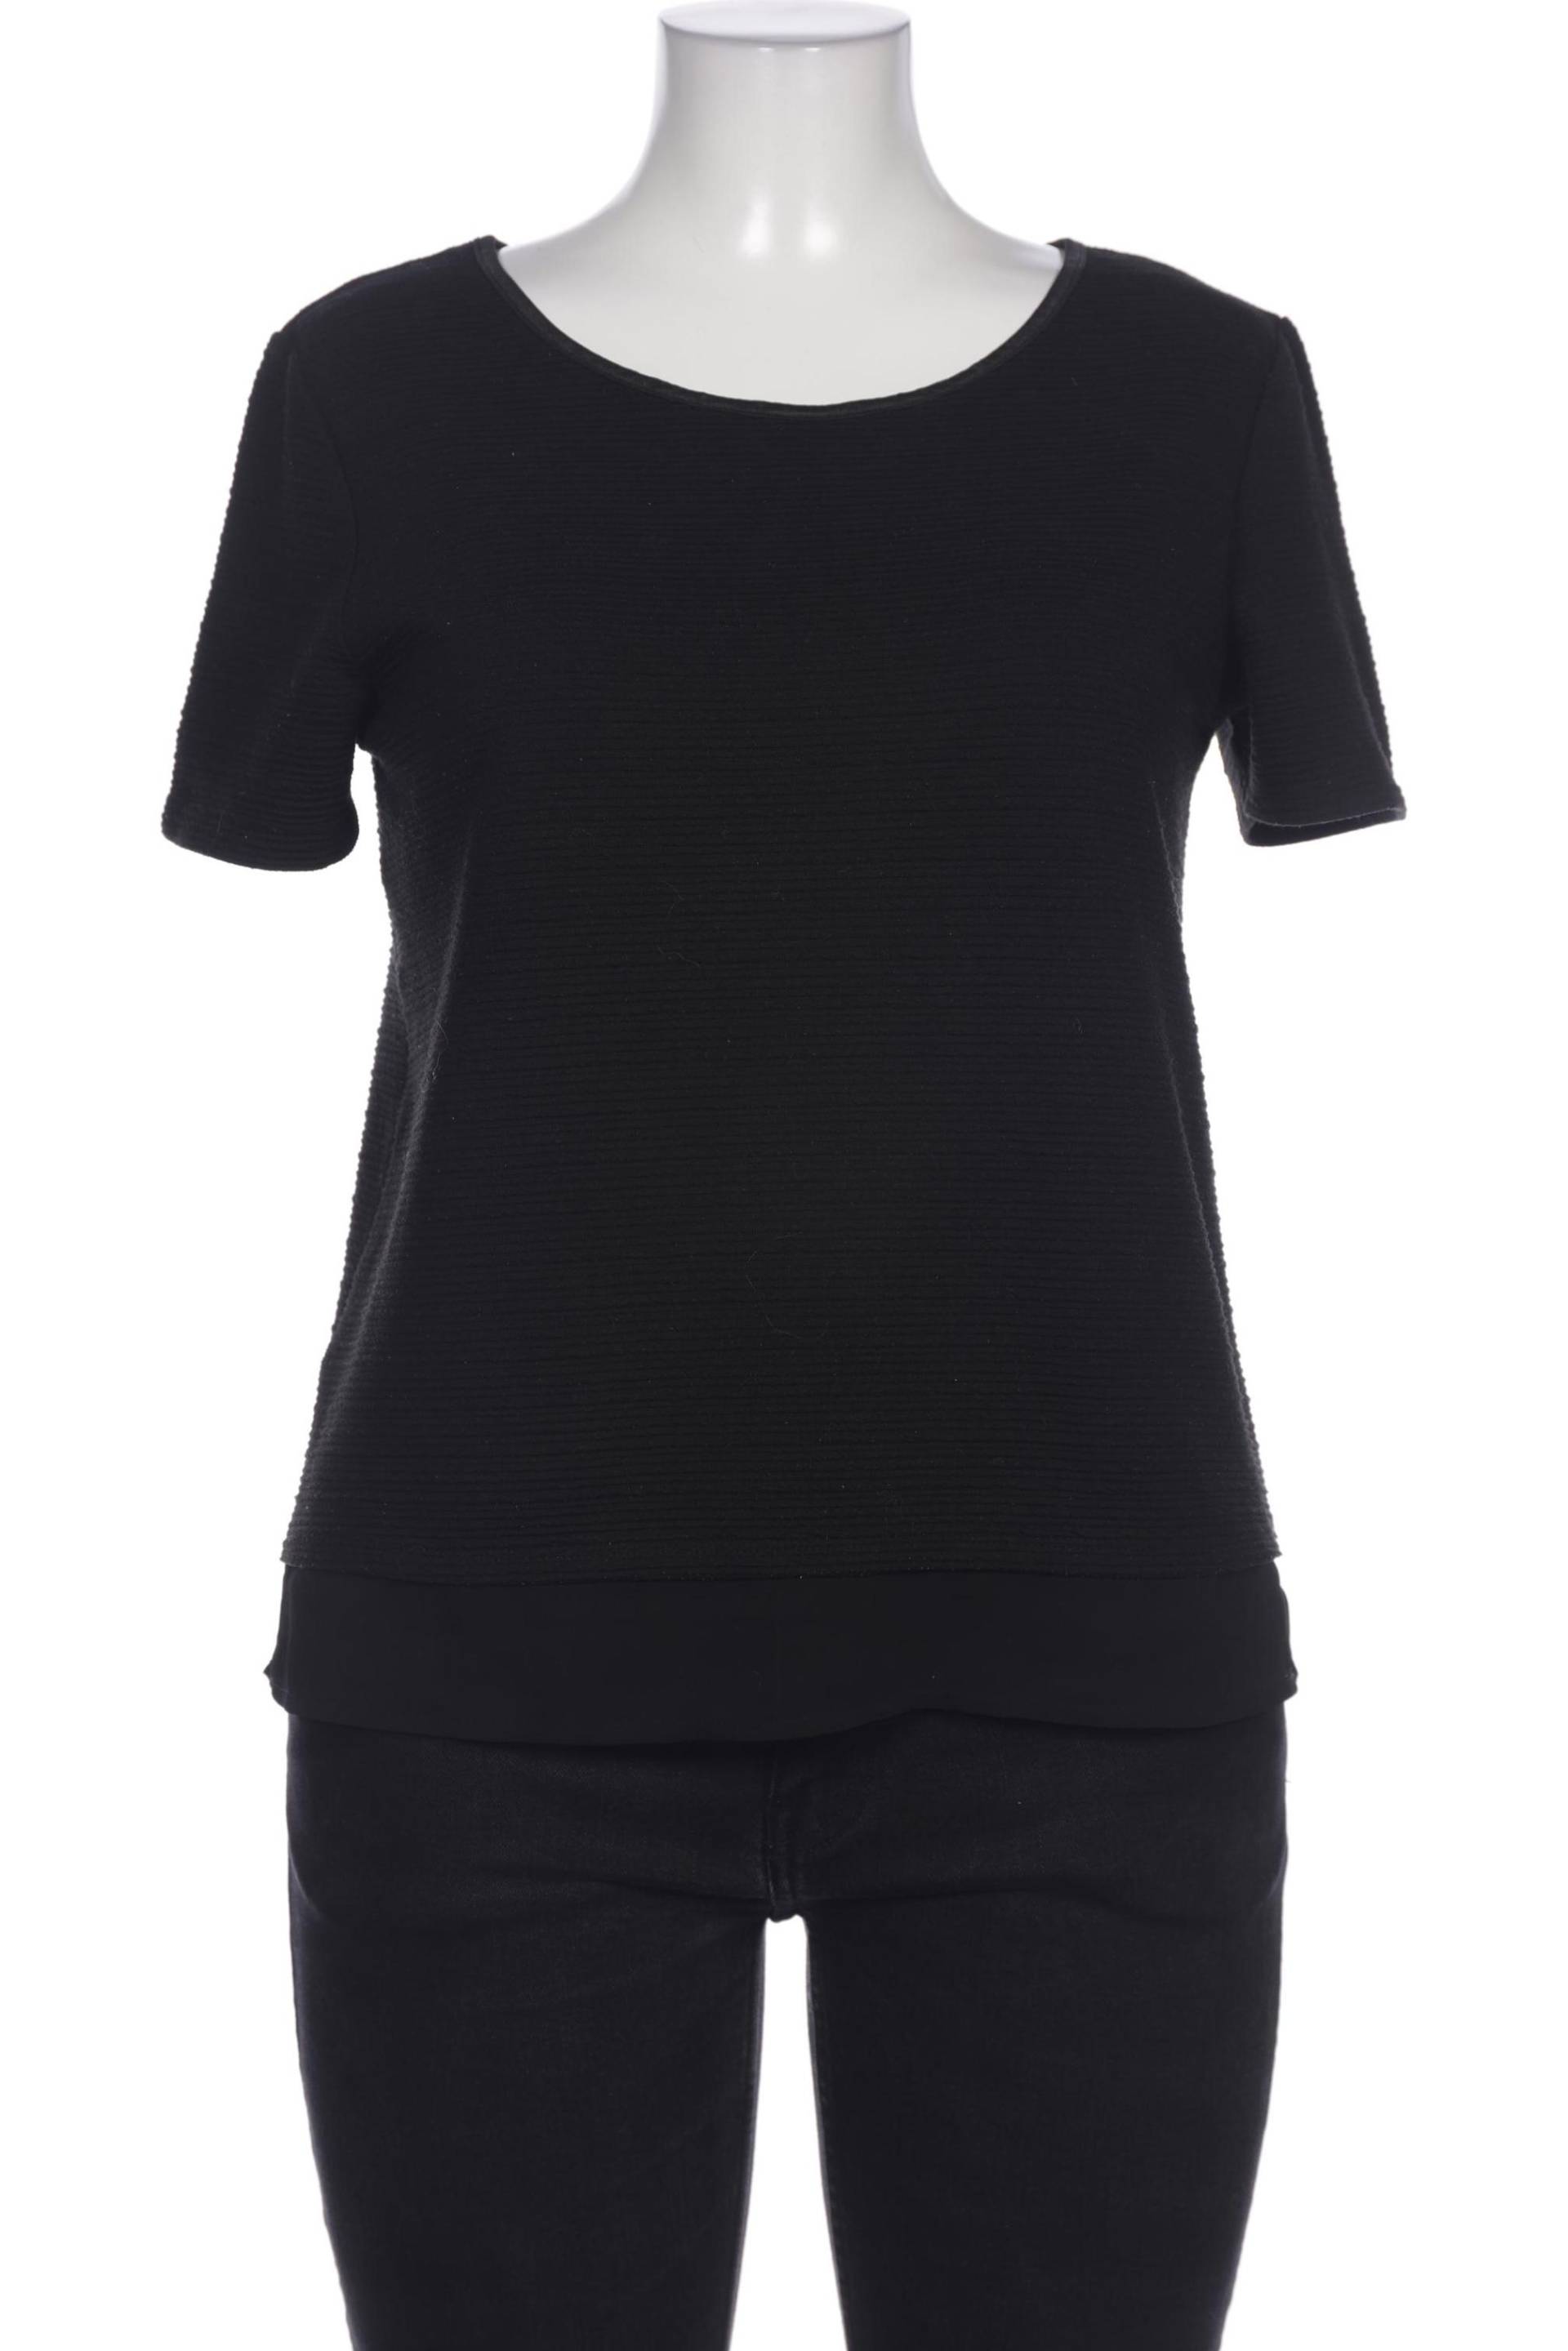 SAINT TROPEZ Damen T-Shirt, schwarz von SAINT TROPEZ